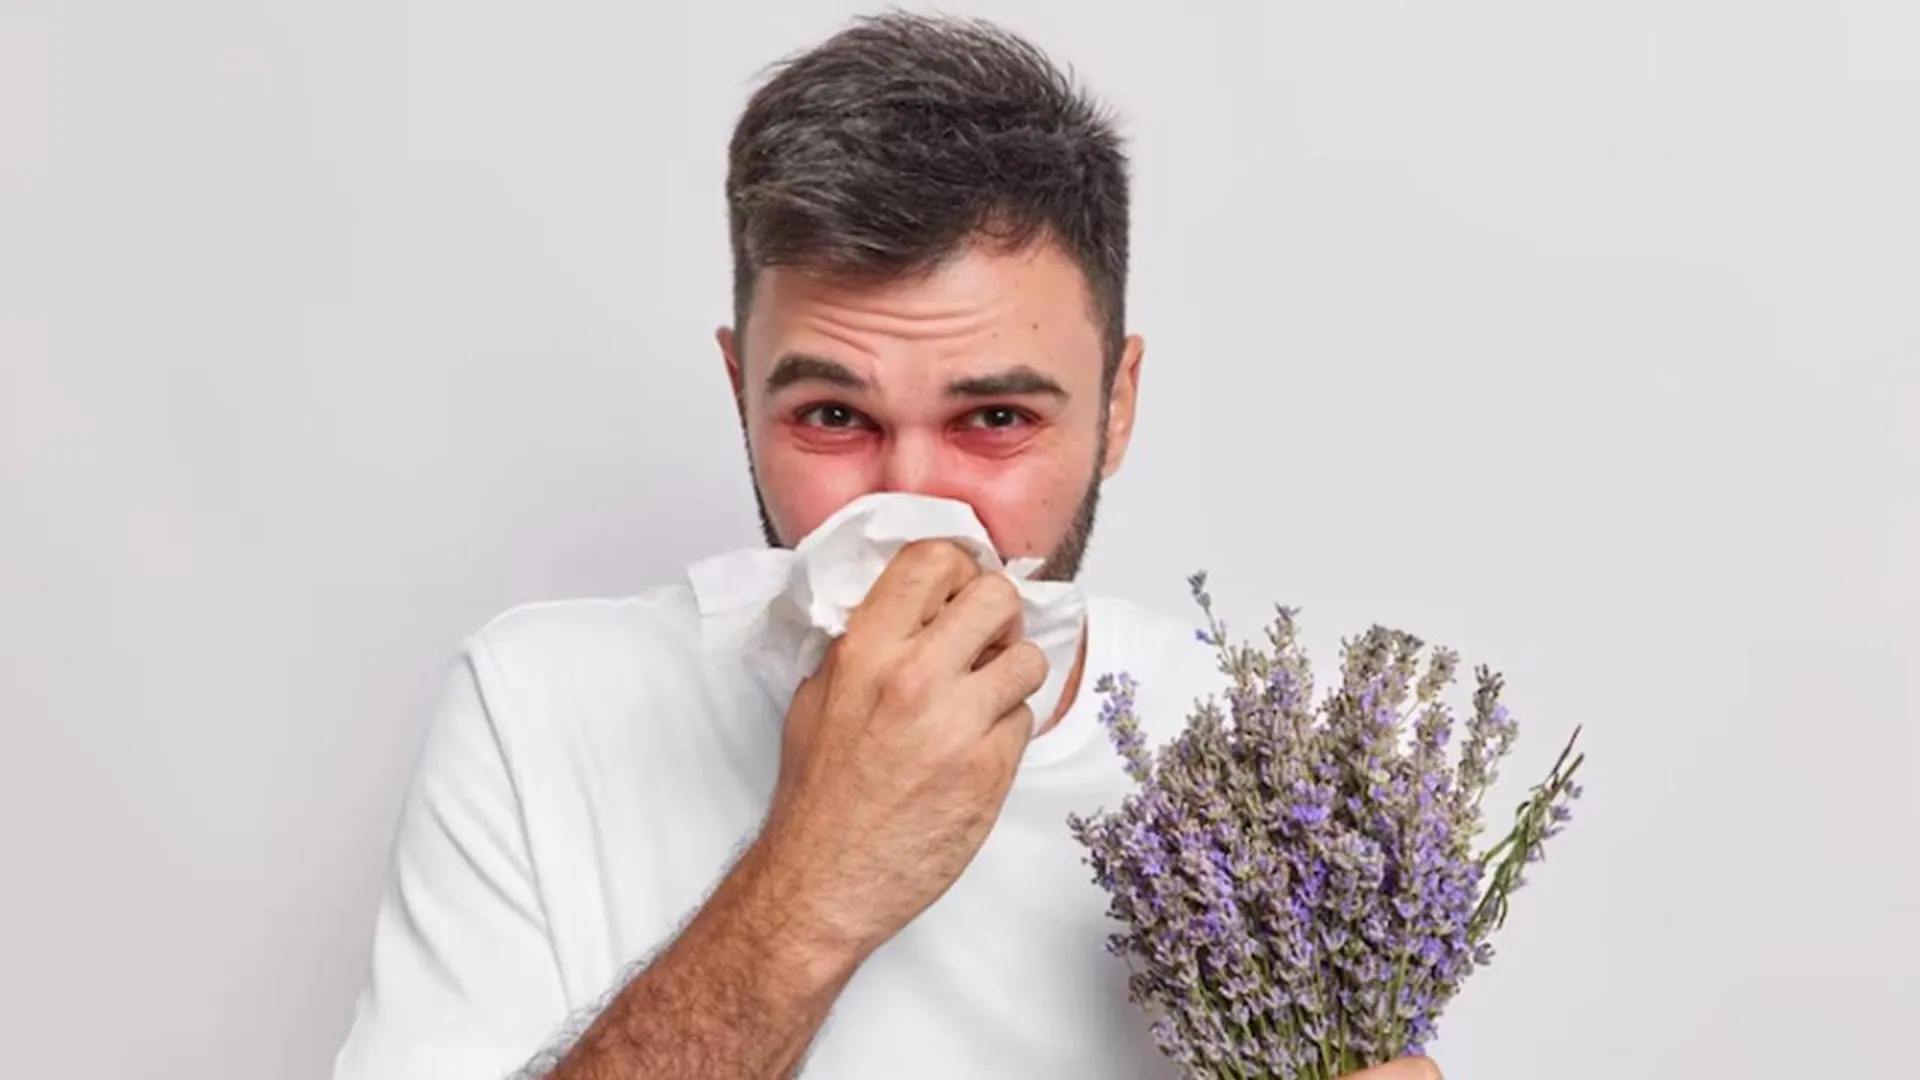 Аллерголог Попов рассказал, какие опасные болезни могут маскироваться под аллергию